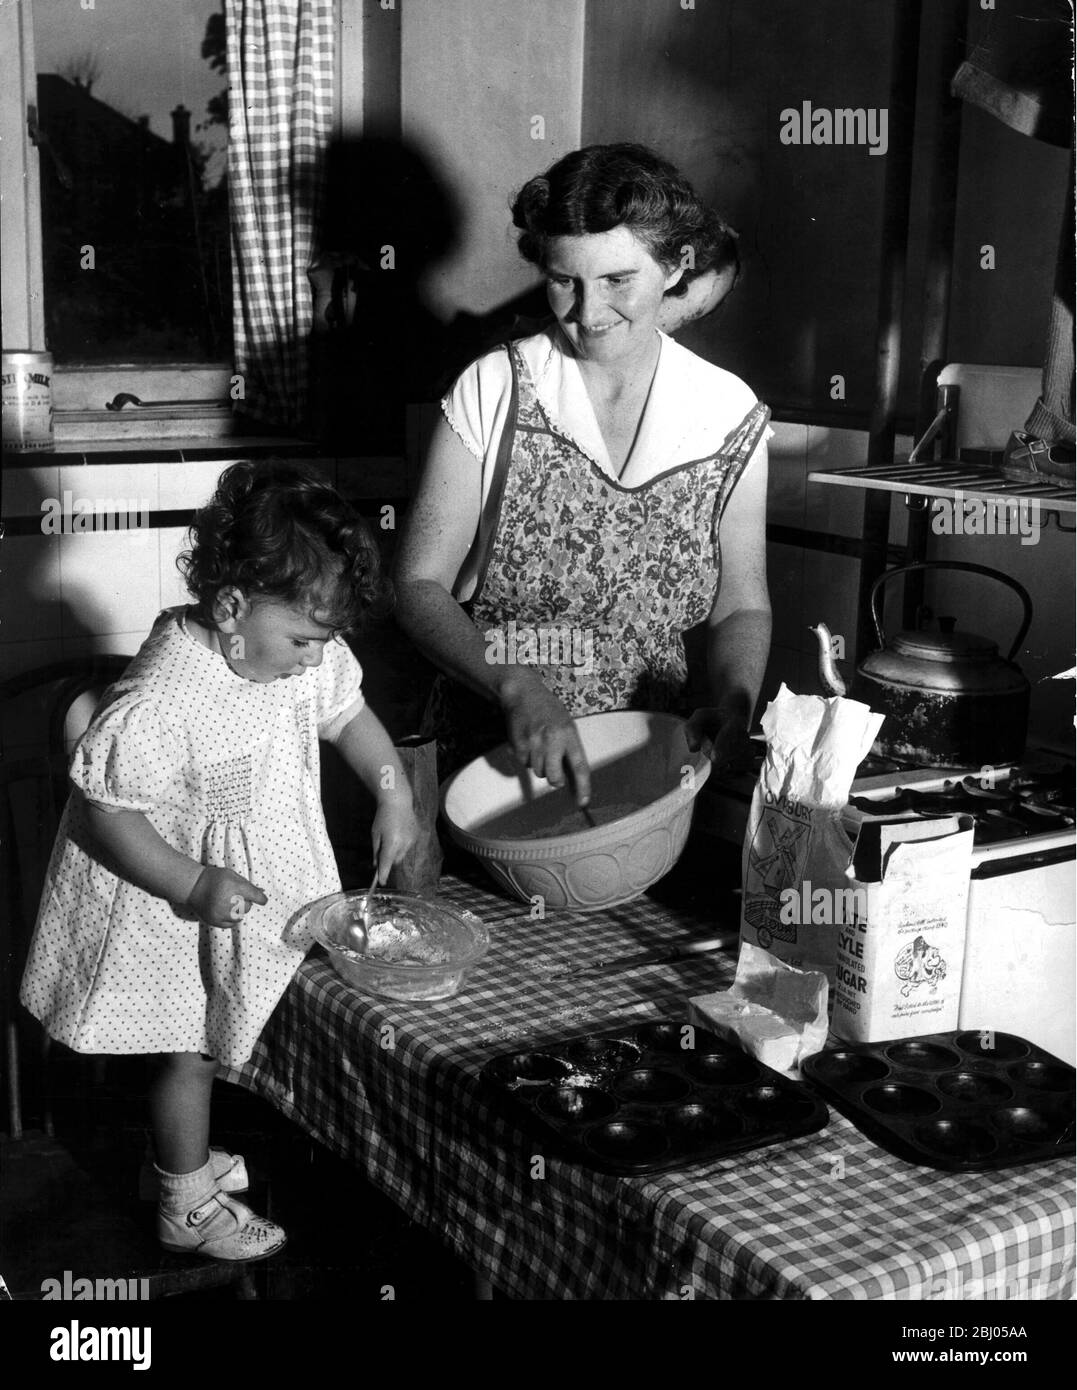 Shop Kuchen sind ein Luxus, den die Brindleys selten leisten können, da Preise und die Lebenshaltungskosten seit dem Krieg gestiegen sind - - 1952 Stockfoto